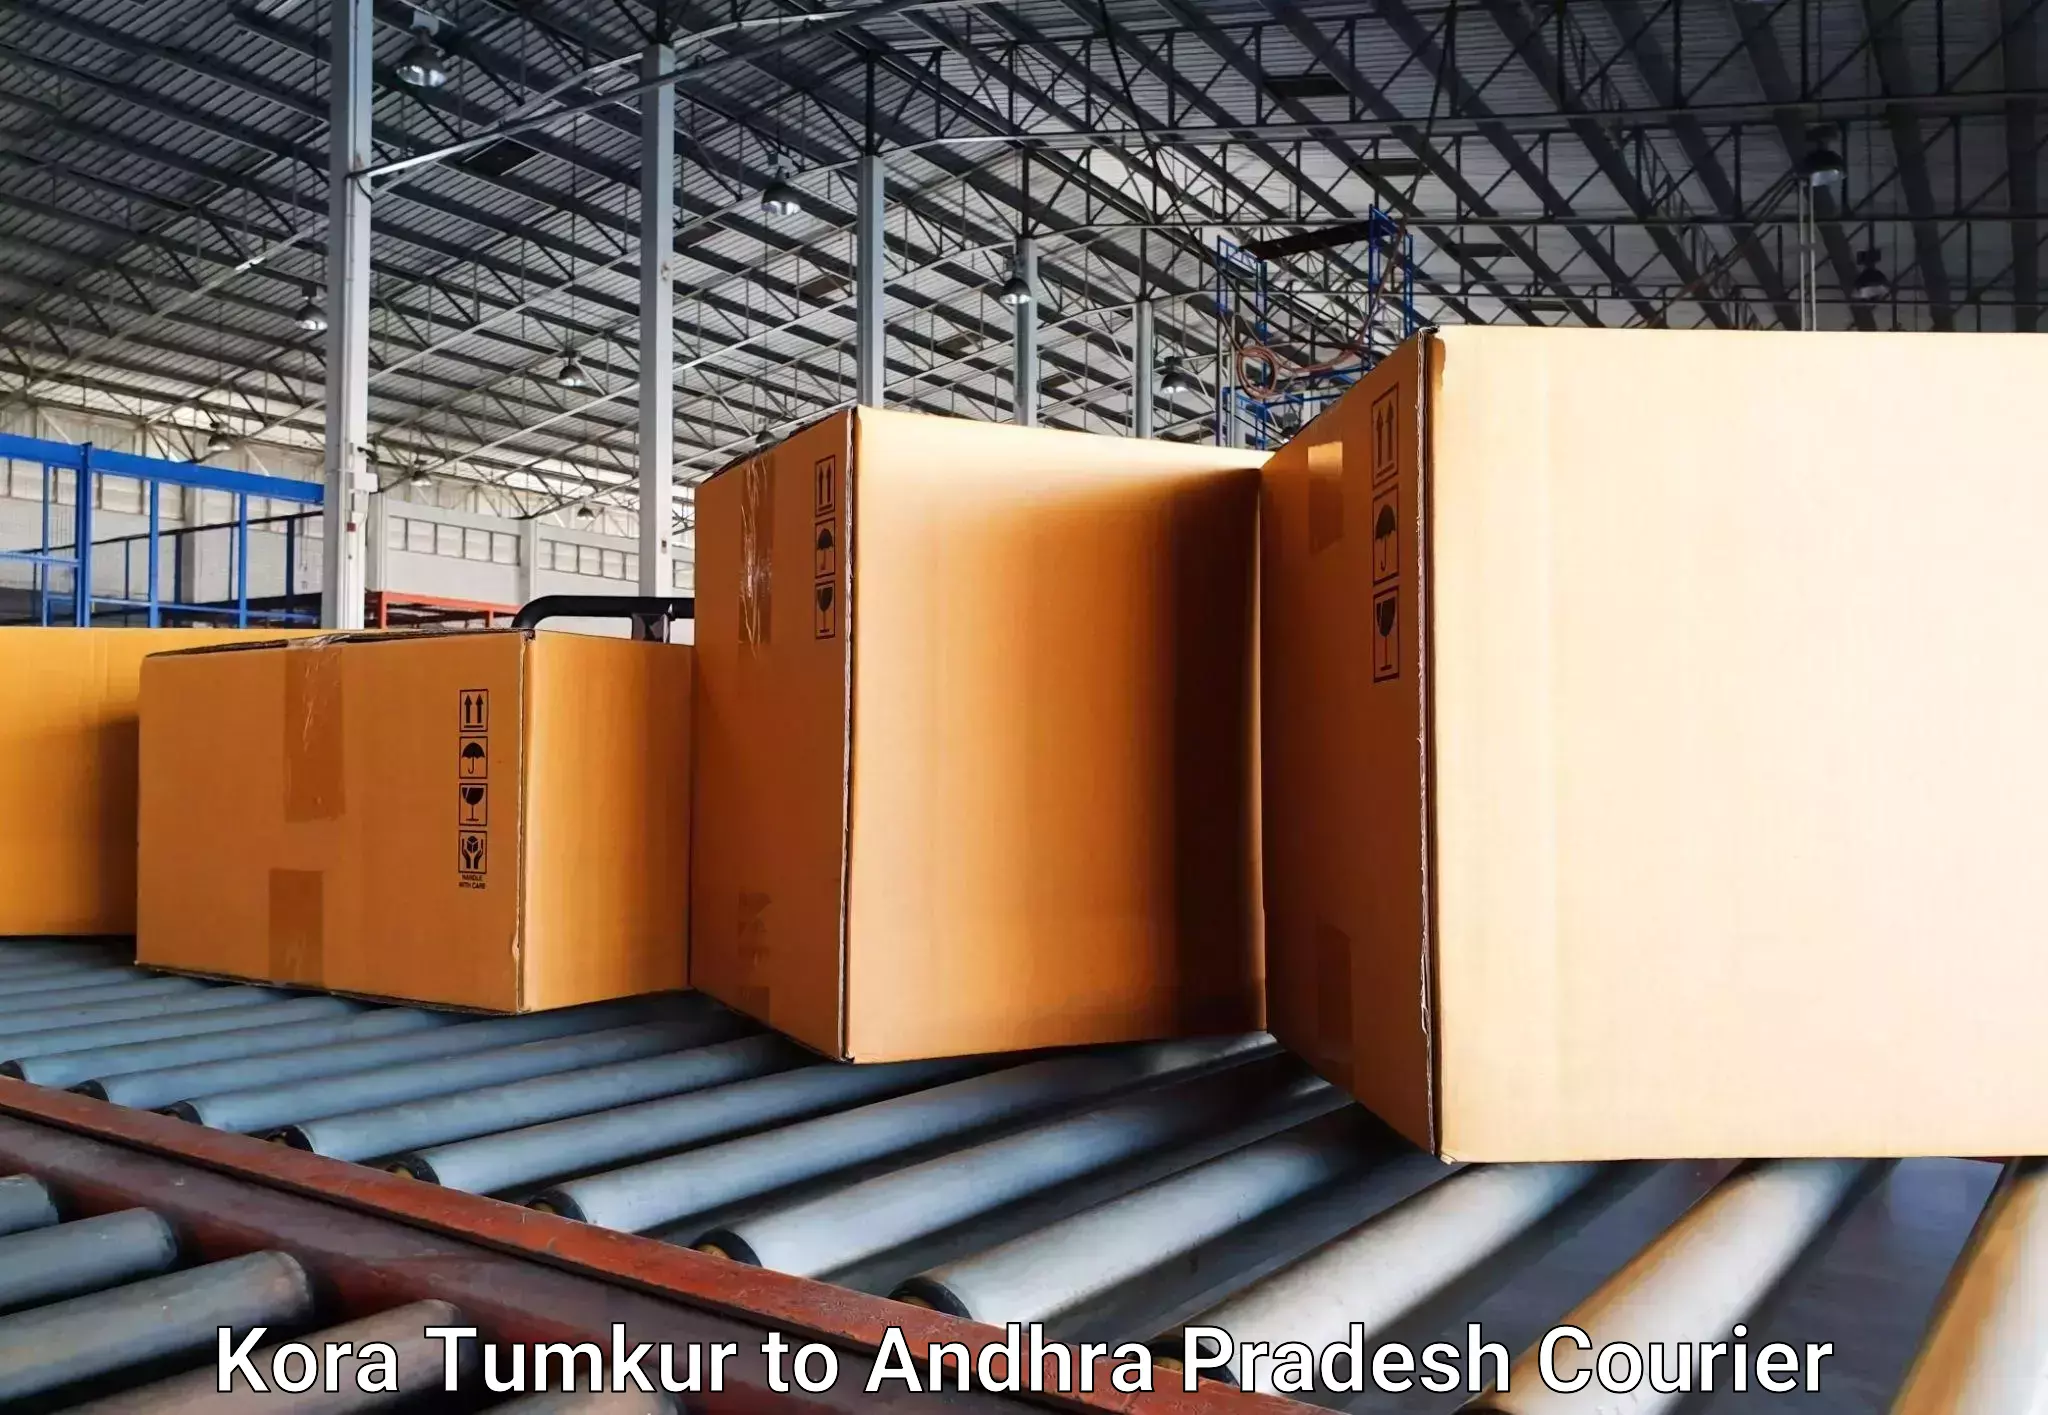 Baggage delivery technology Kora Tumkur to Konthamuru